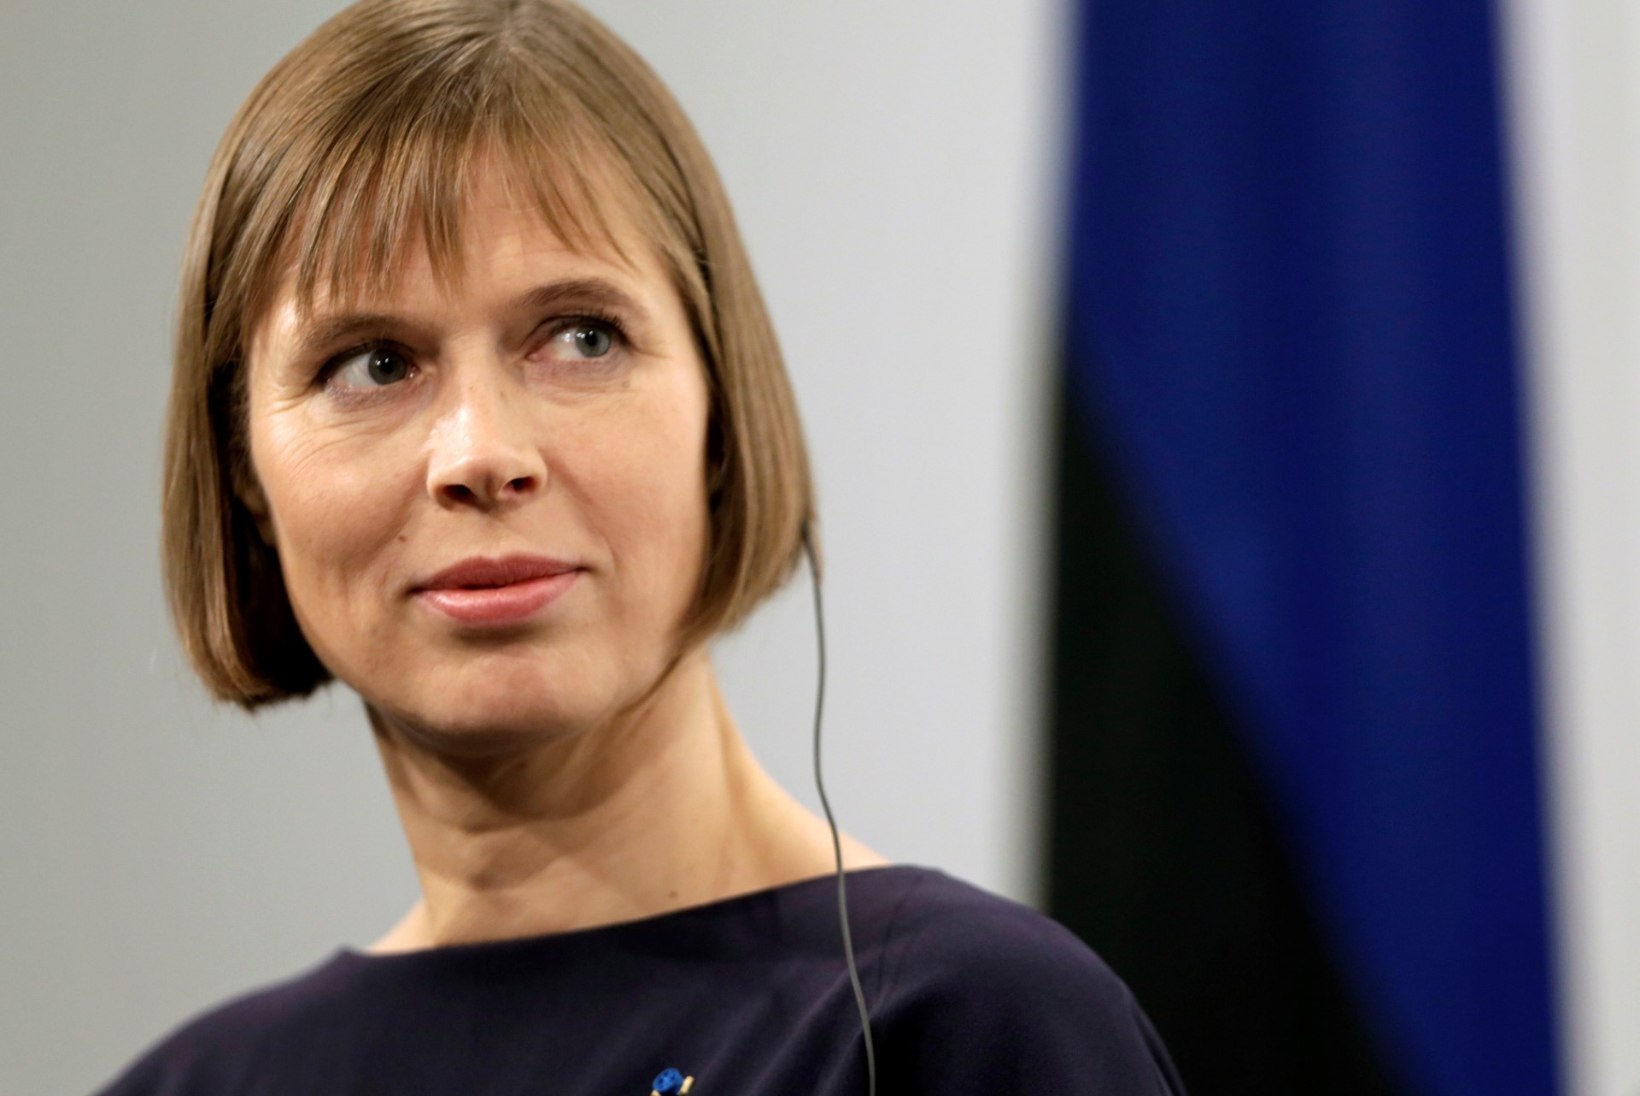 TV3 VIDEO | Mang ennustab Eestile segaseid ja raskeid aegu: "Vaene president!"